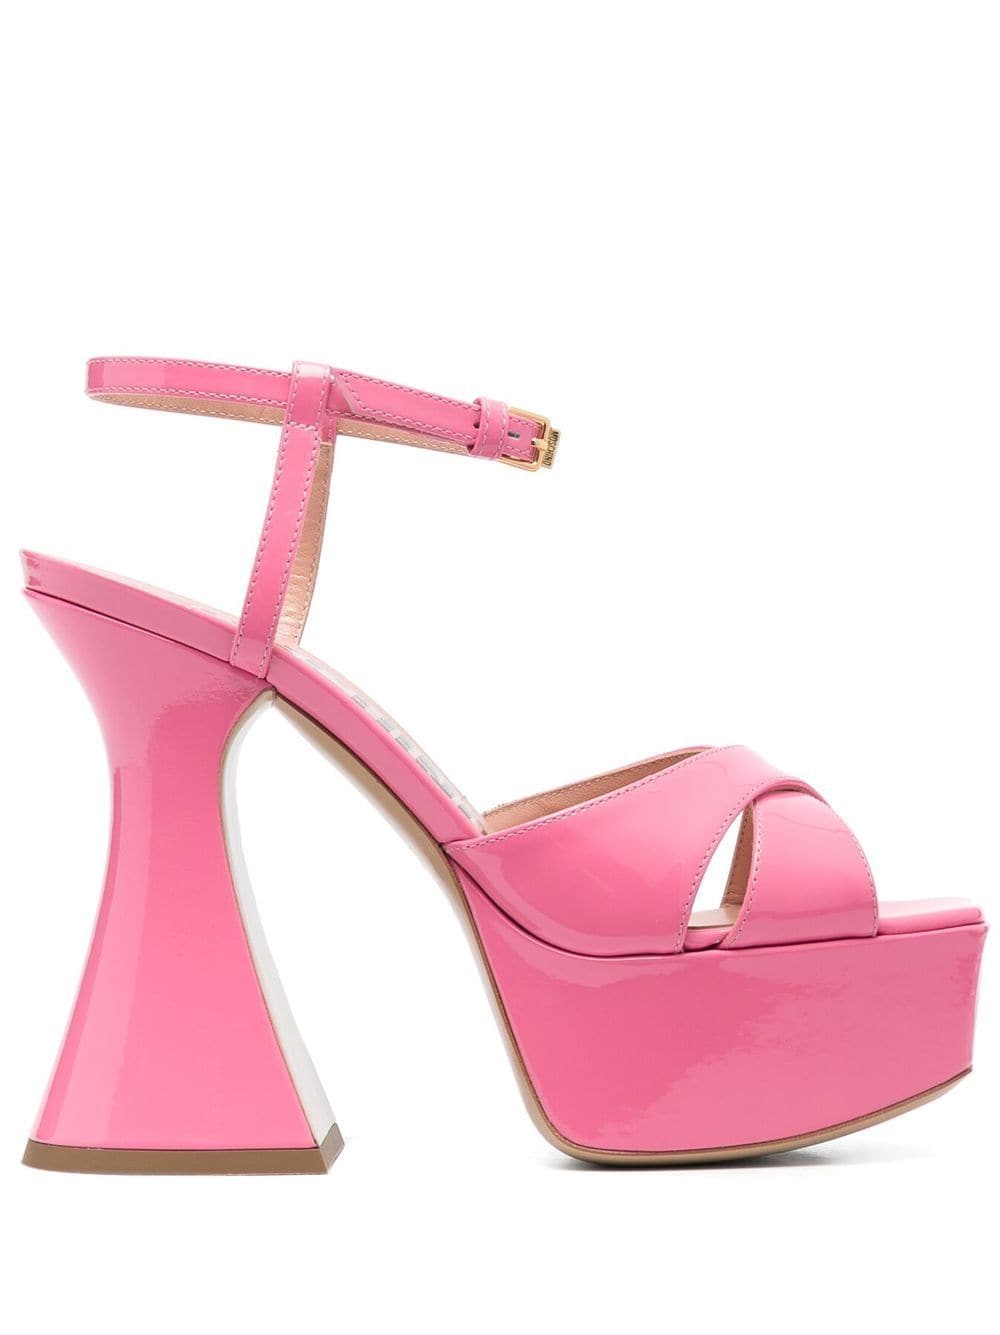 Moschino patent leather platform sandals - Pink von Moschino